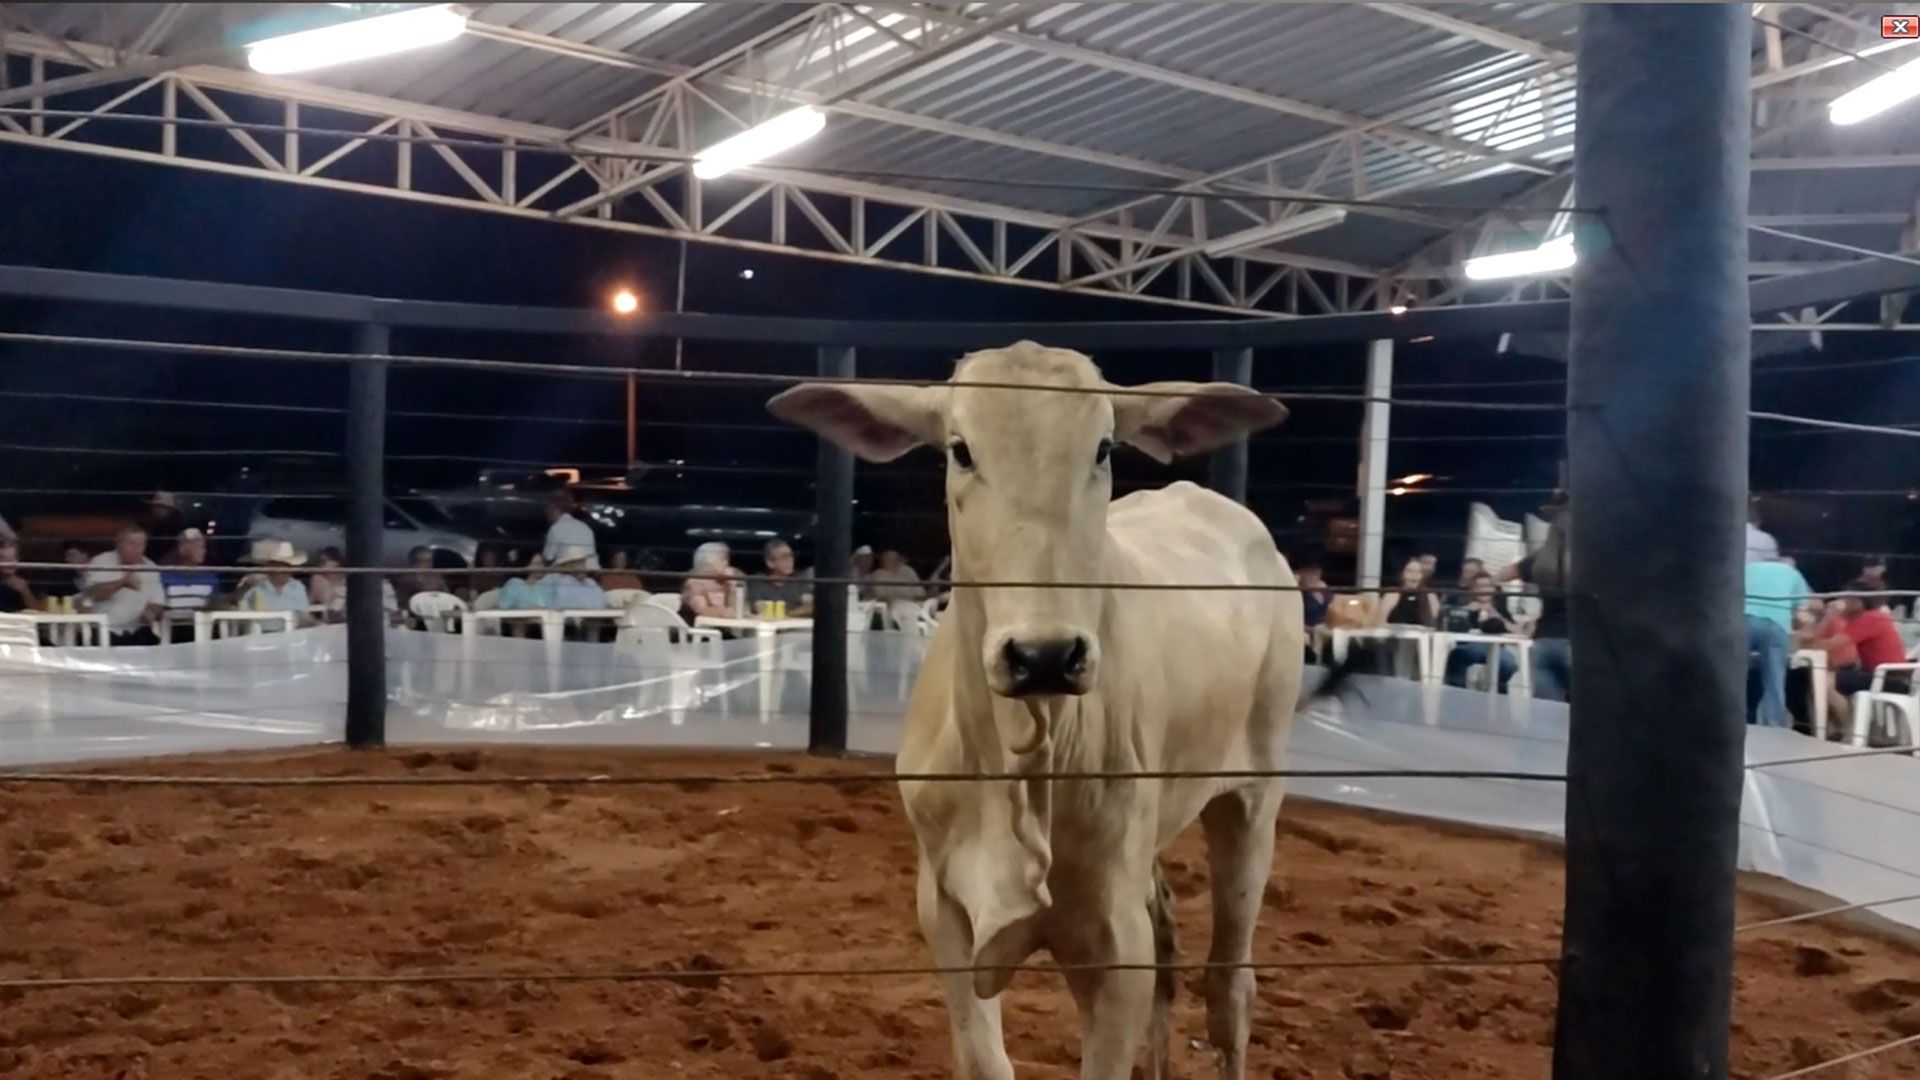 Leilão de gado em Santa Fé do Sul arrecada R$ 160 mil para Hospital do Amor